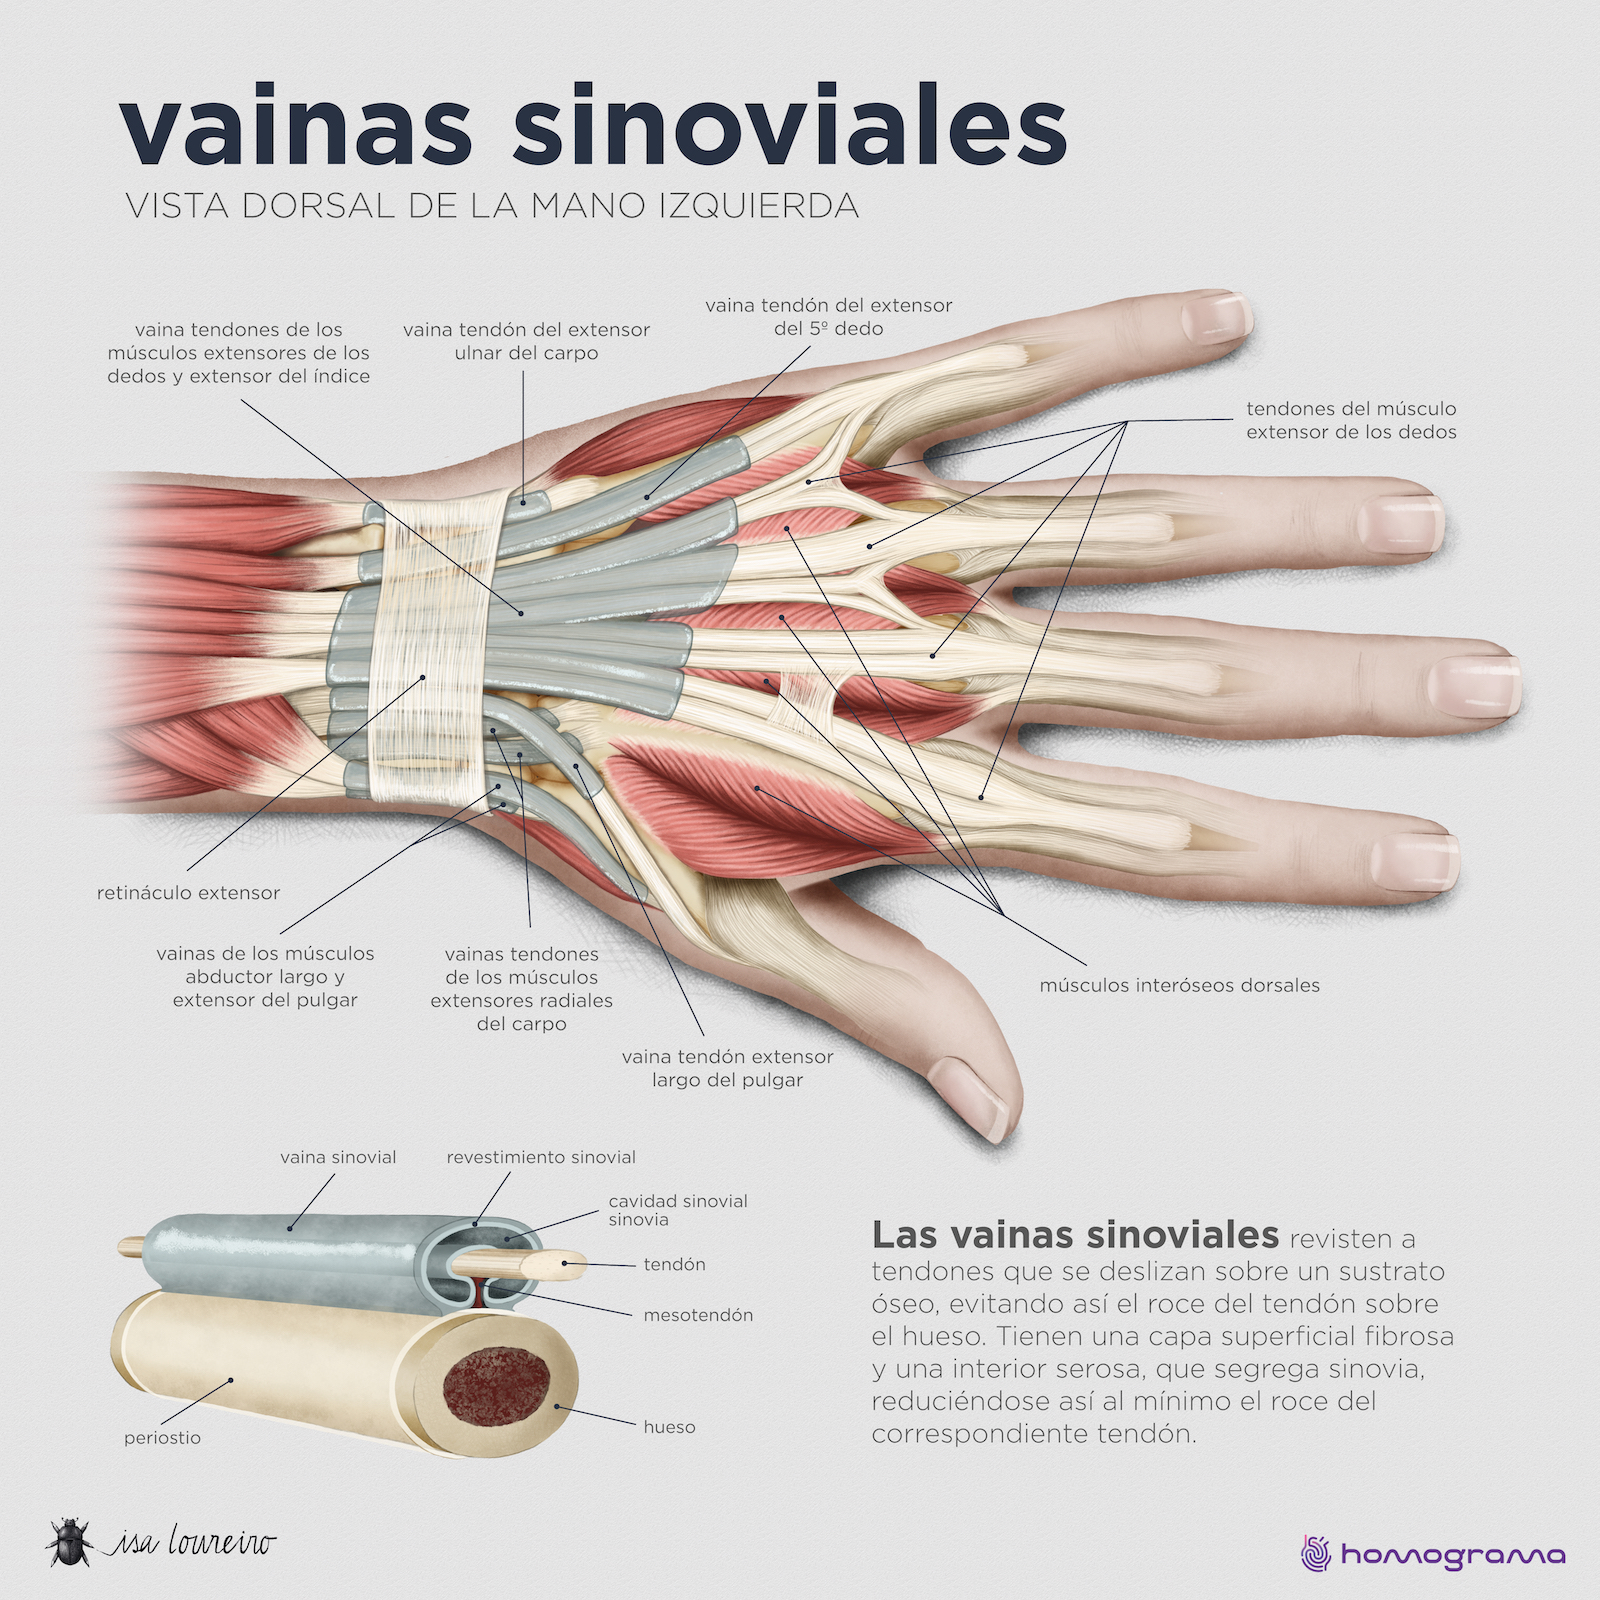  Ilustración final de las vainas sinoviales del dorso de la mano por Isa Loureiro.